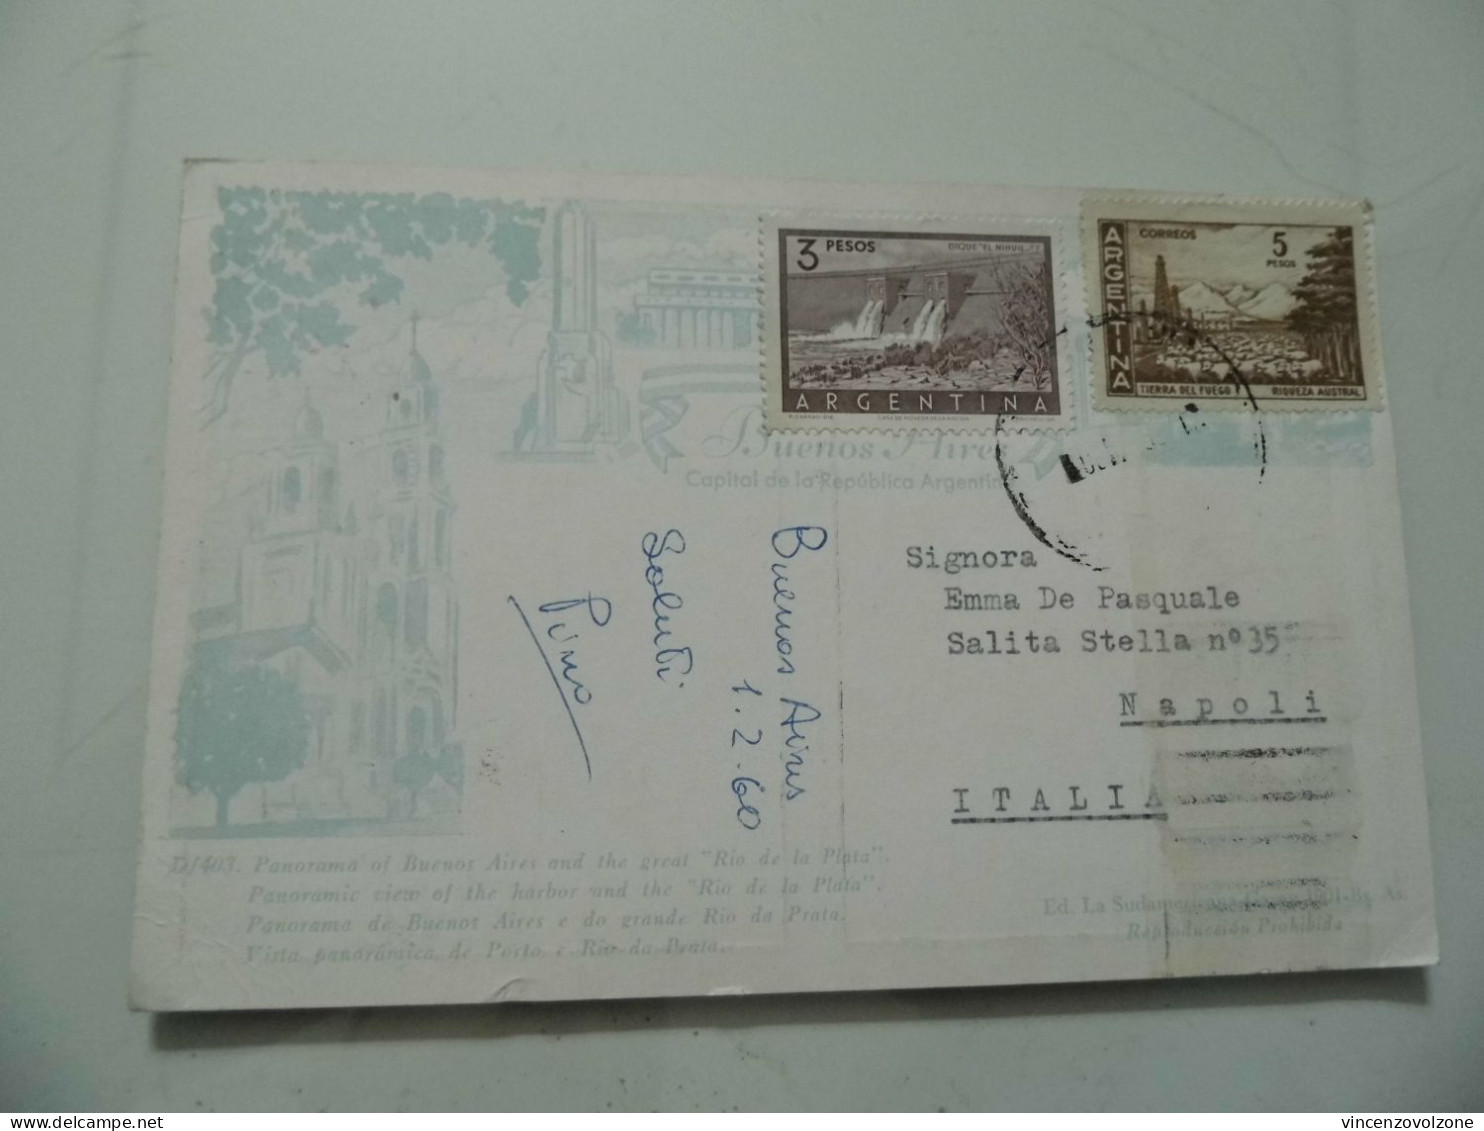 Cartolina Viaggiata "PANORAMA DE BUENOS AIRES"  1958 - Argentina